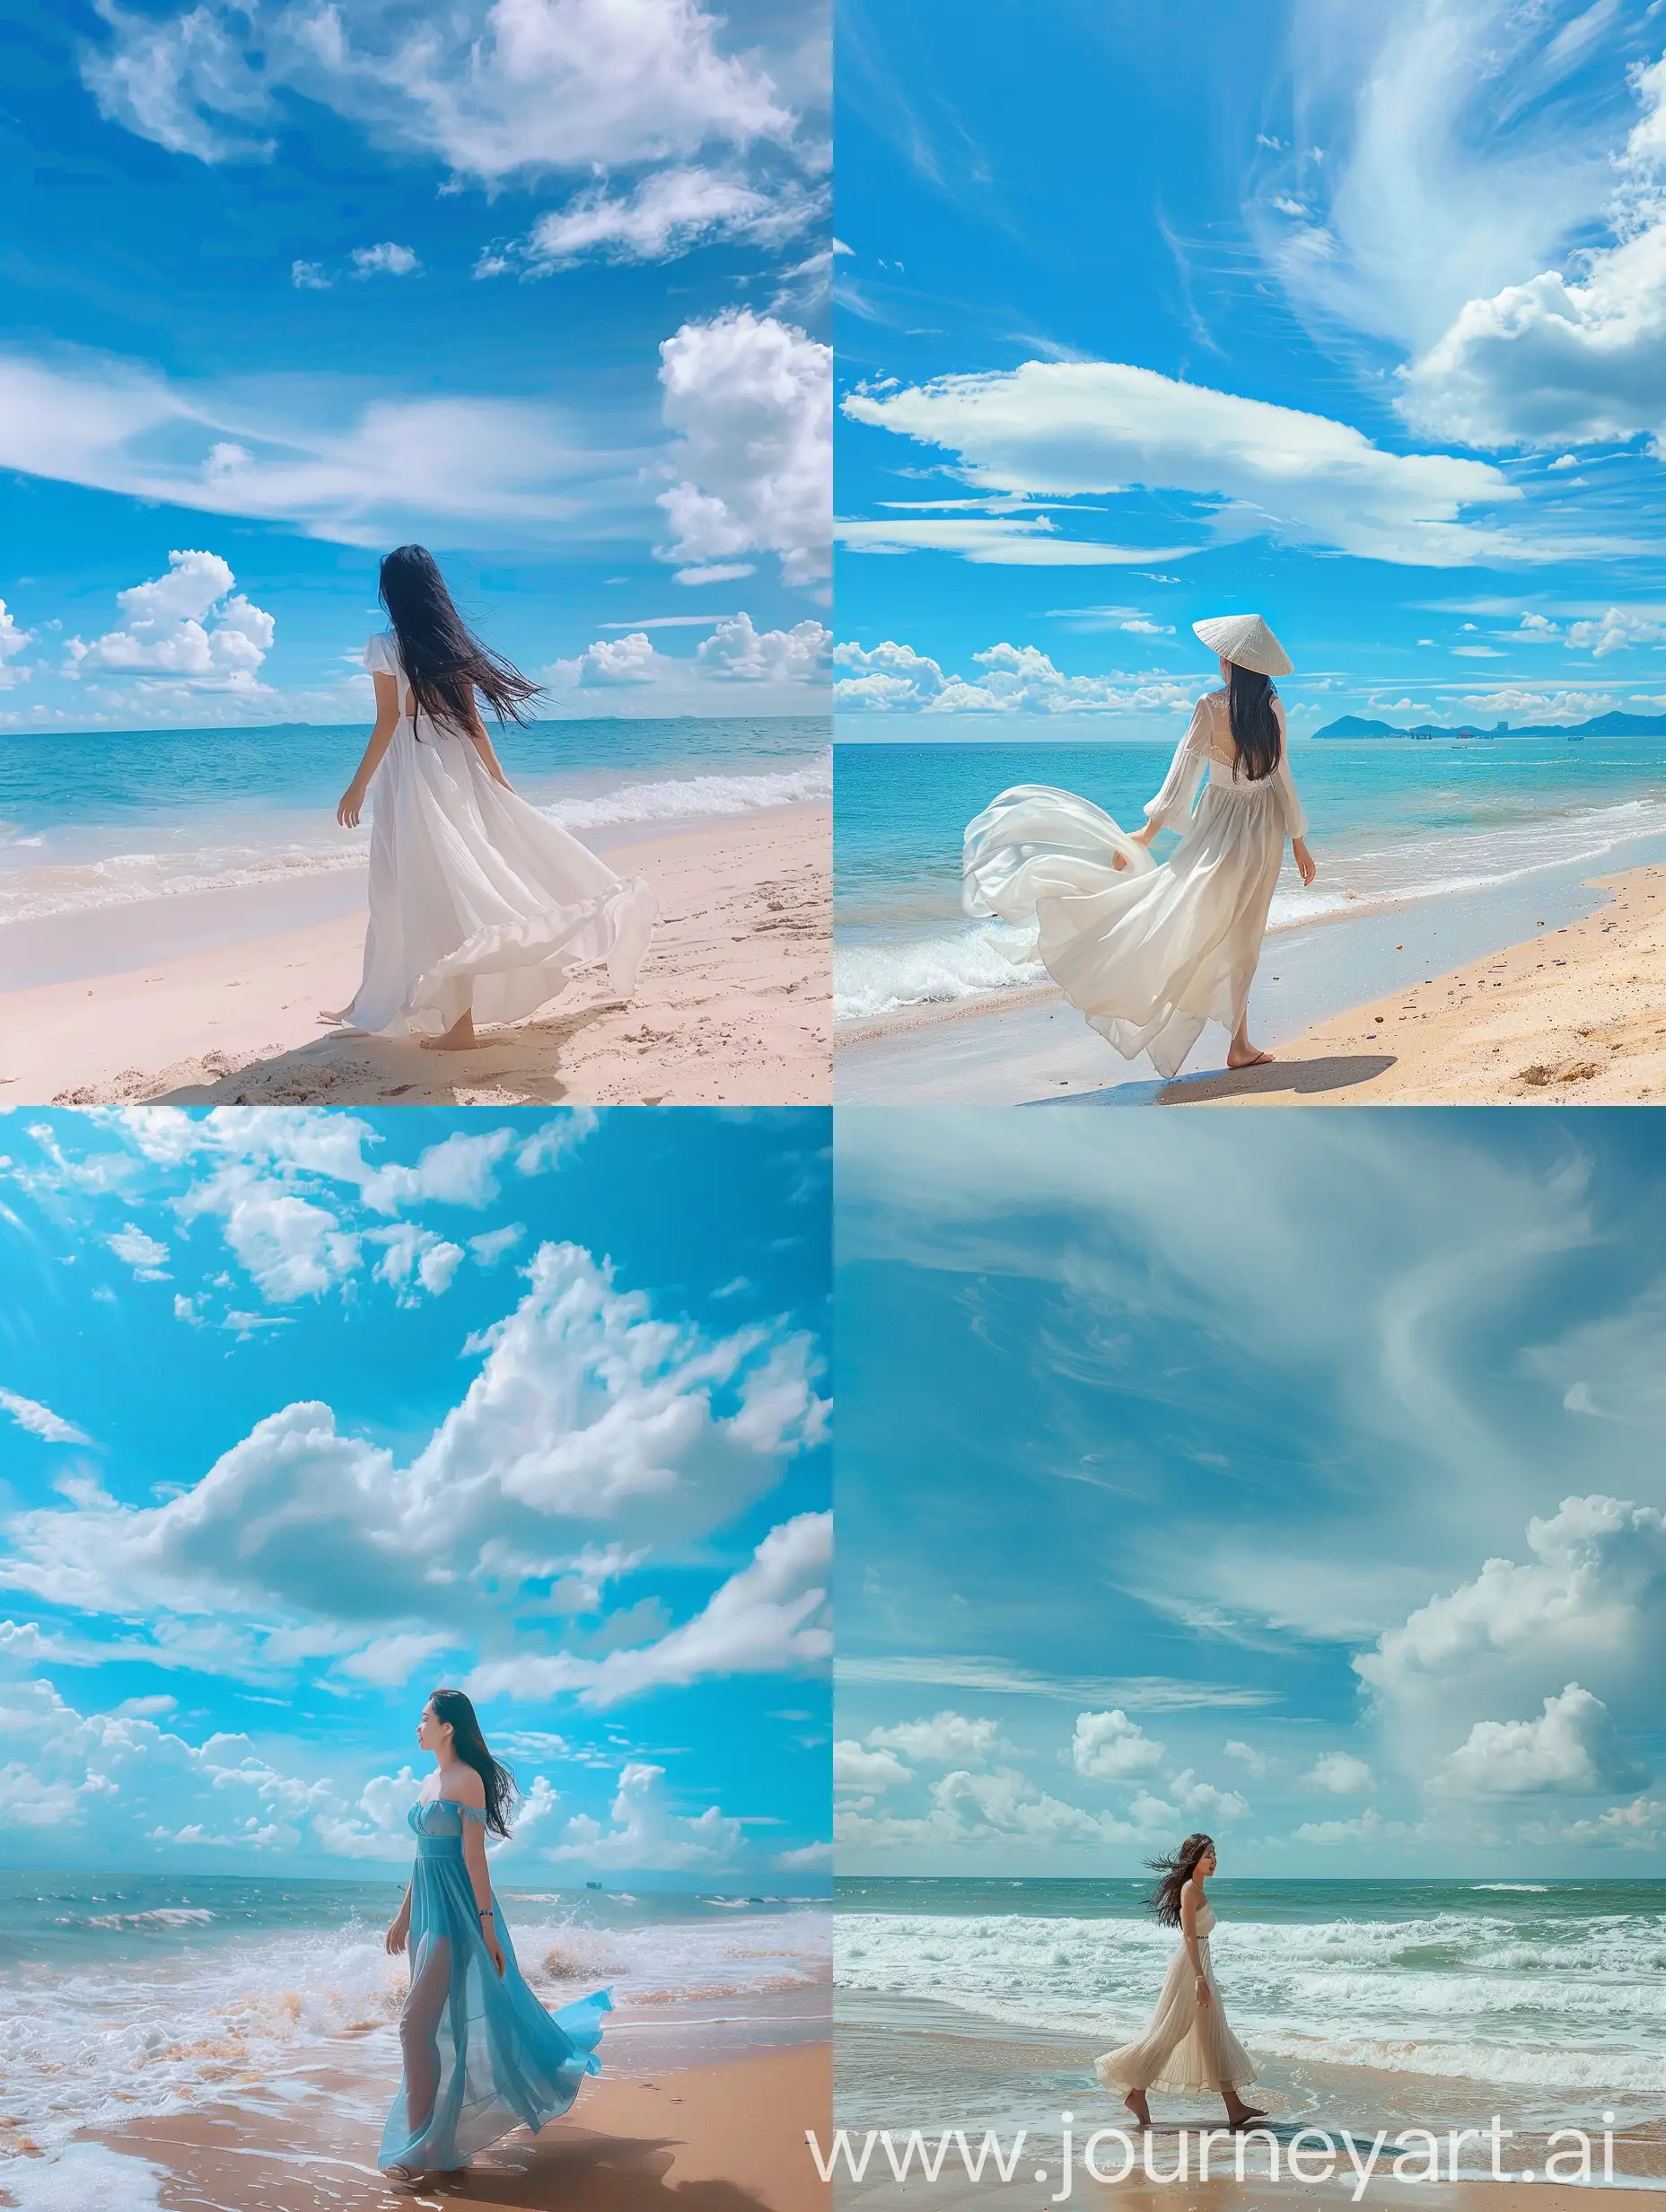 一个越南美女漫步沙滩，蓝天白云，风姿绰约，性感无比